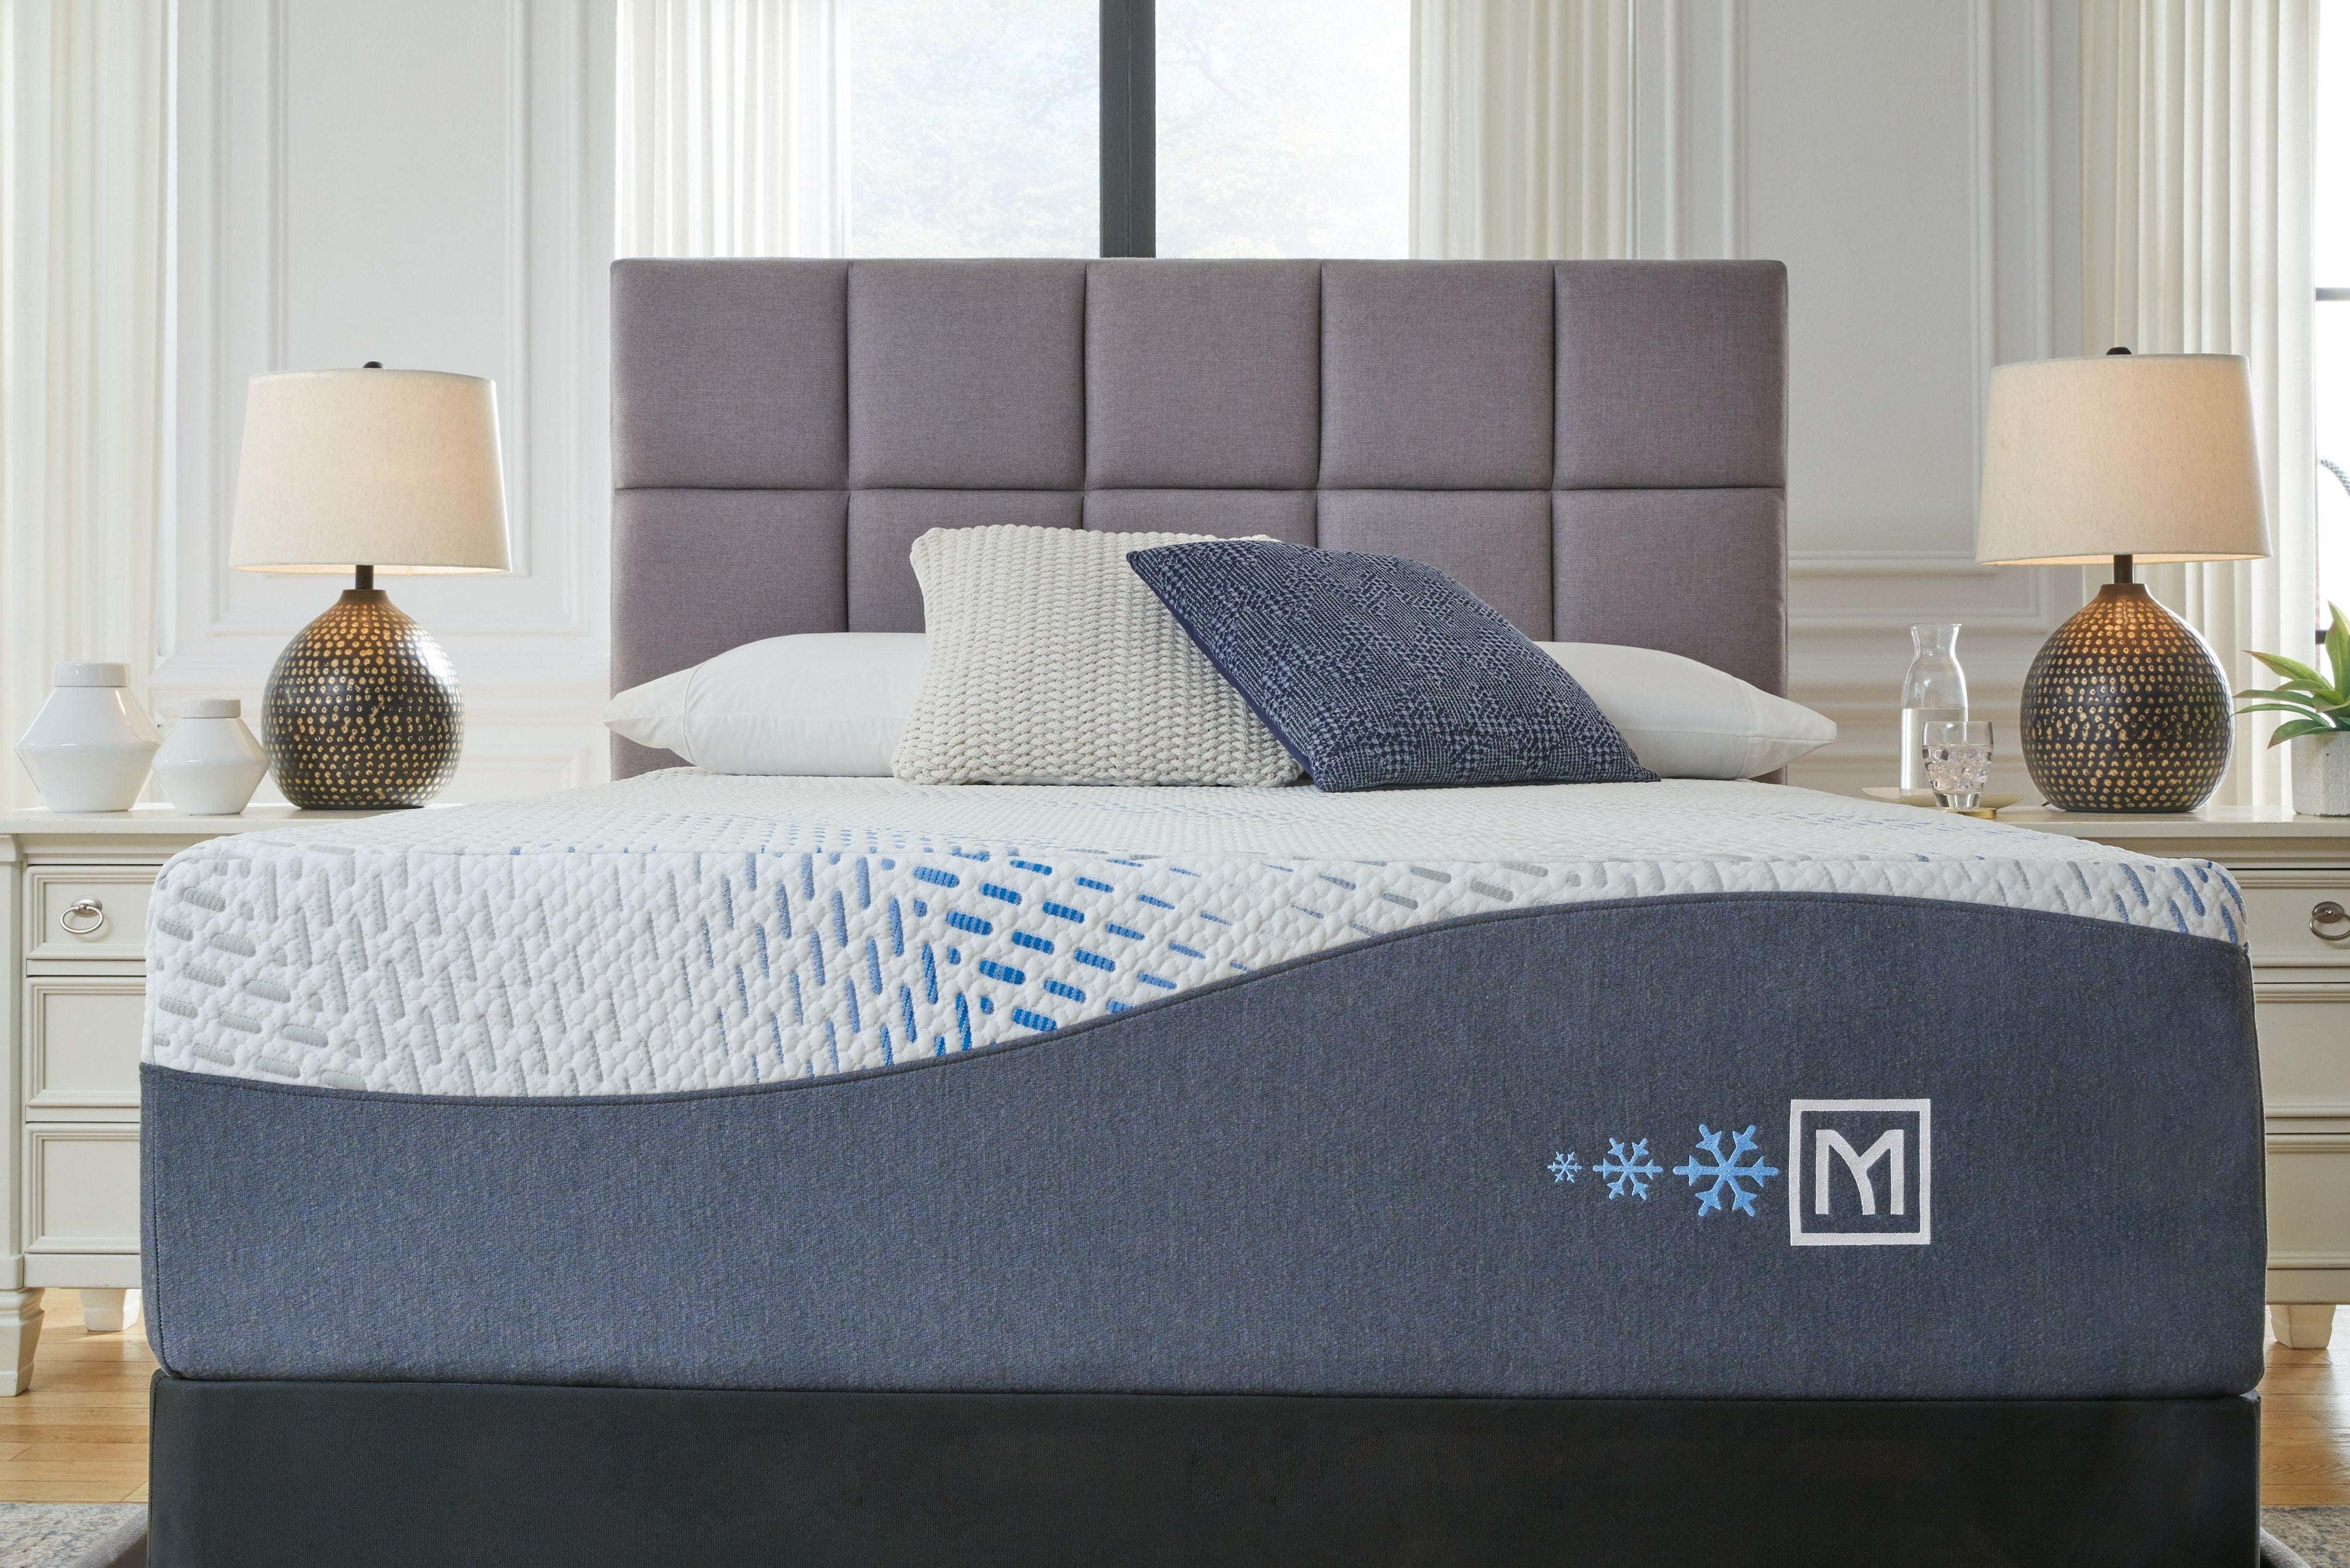 Sierra Sleep® by Ashley - Millennium - Luxury Gel Mattress, Foundation - 5th Avenue Furniture